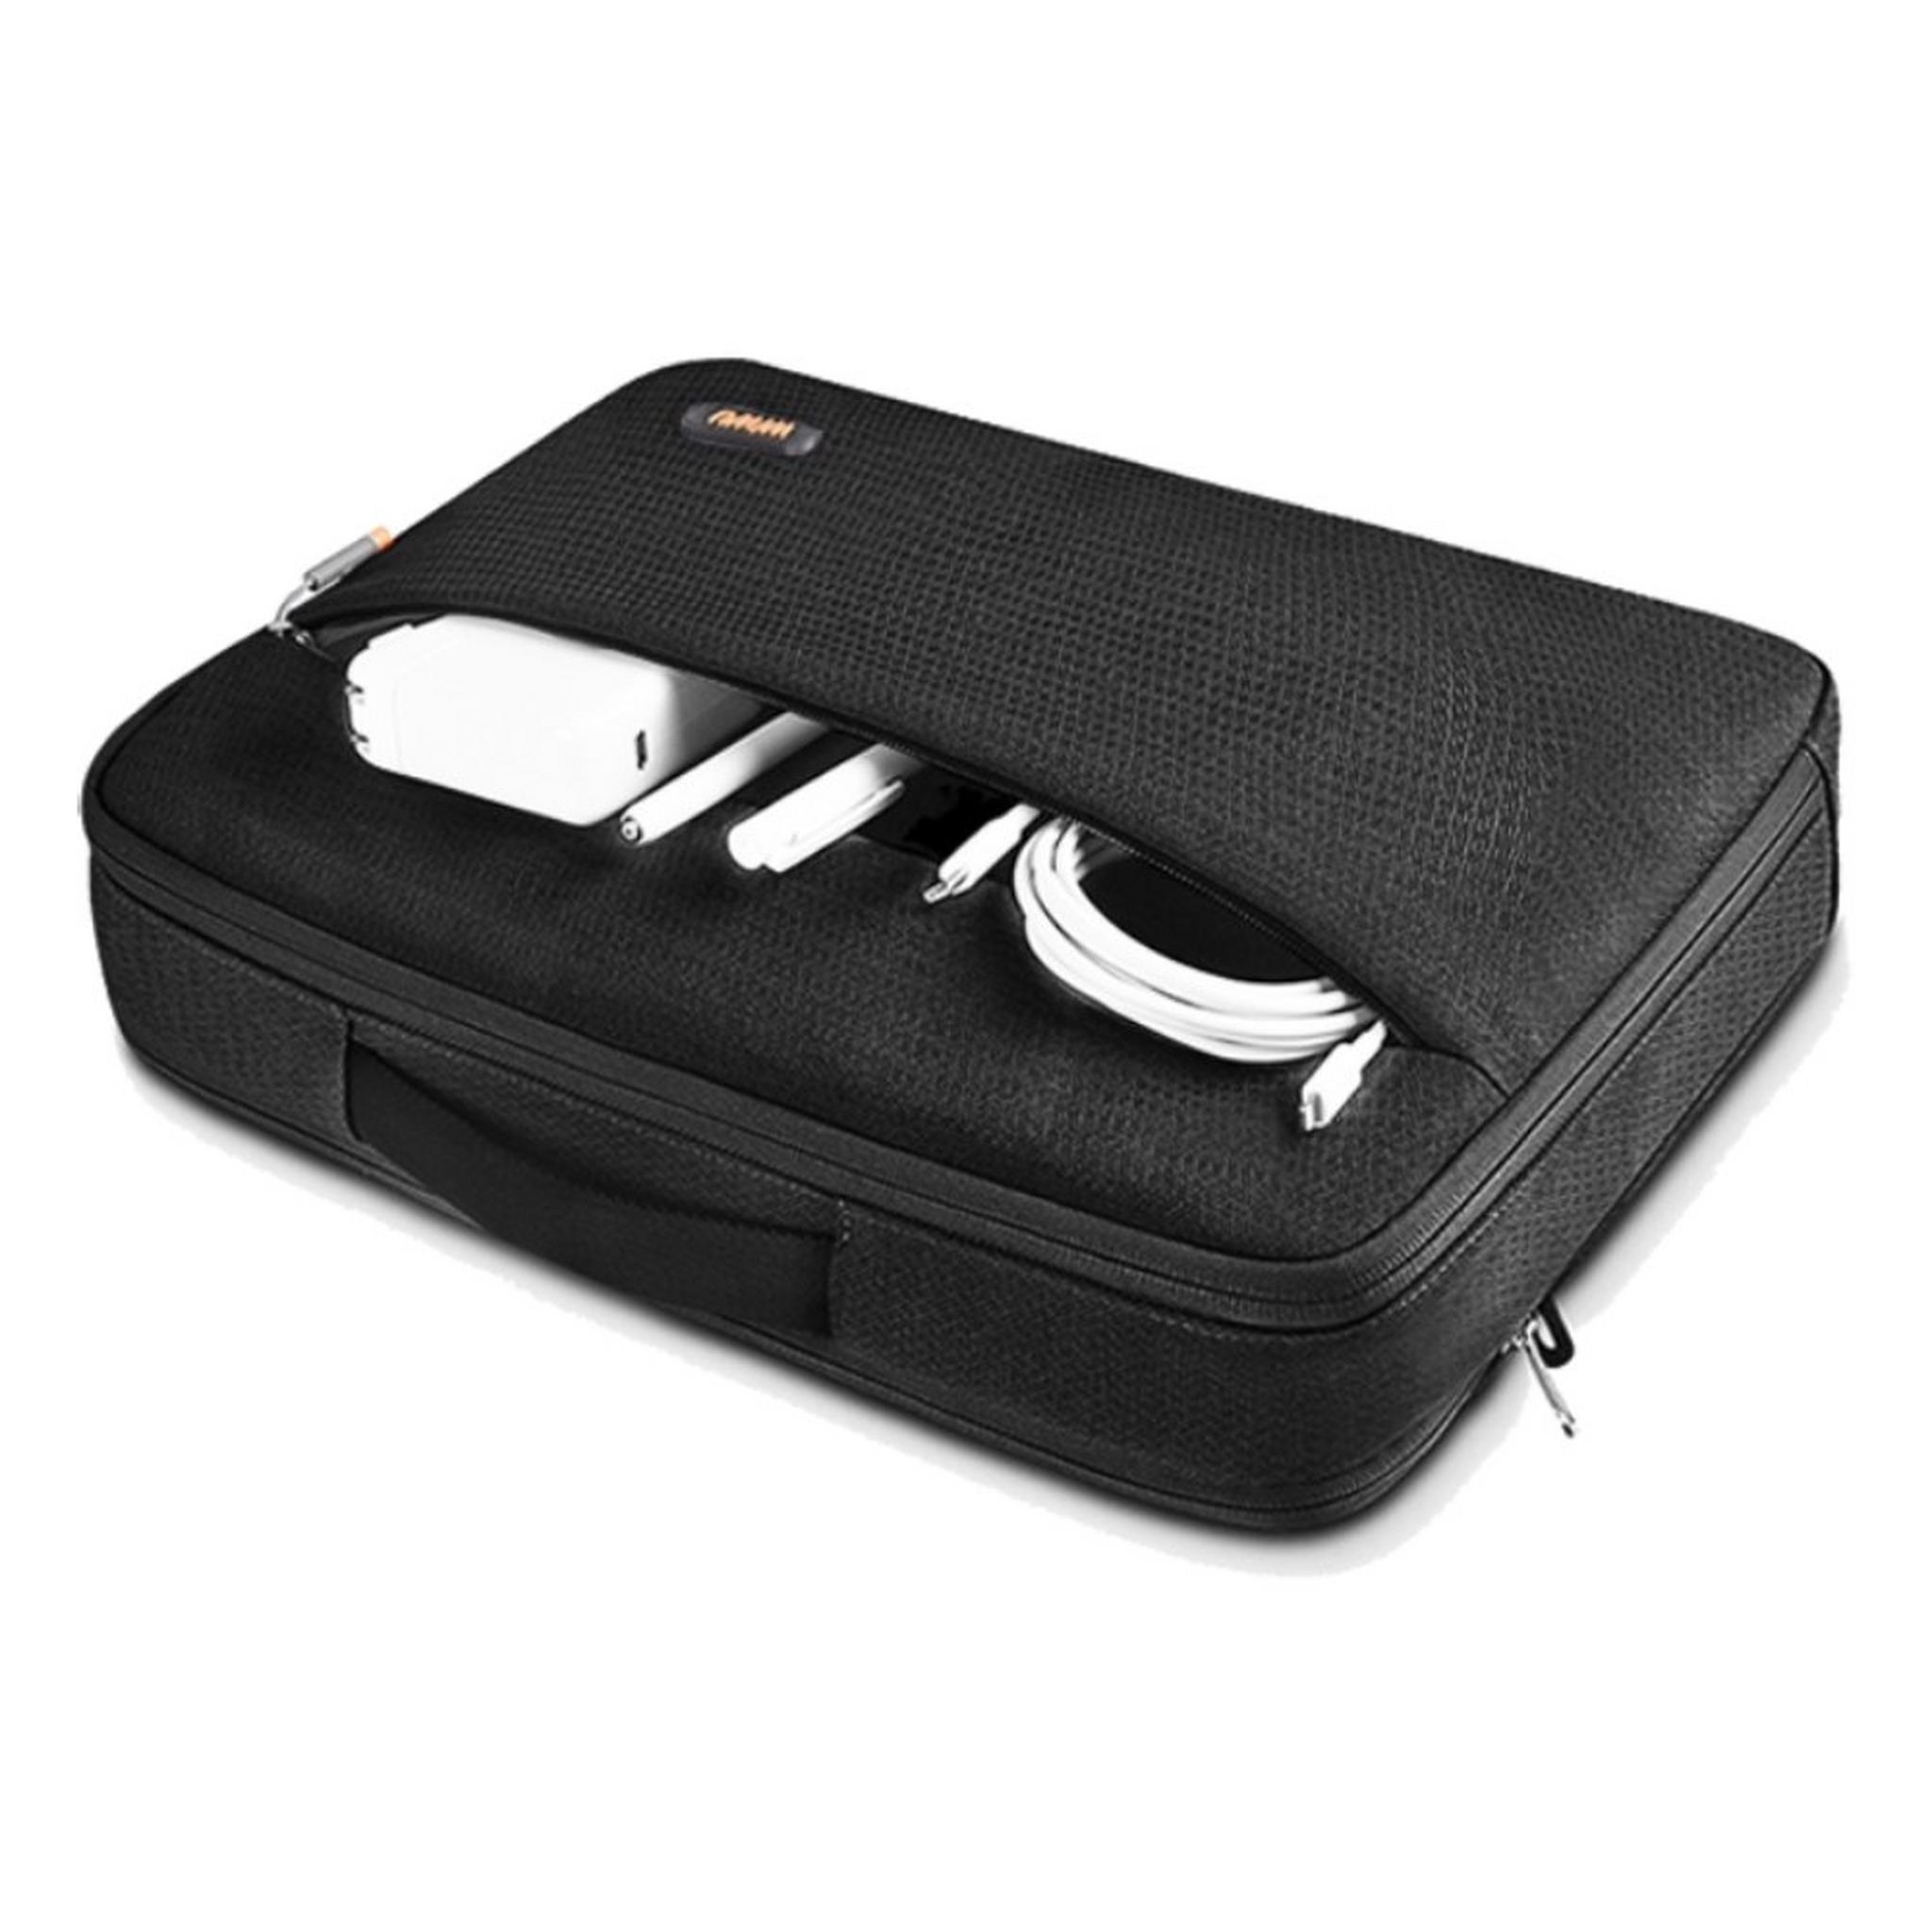 حقيبة بايلوت للابتوب بحجم 14 بوصة من ويو - أسود